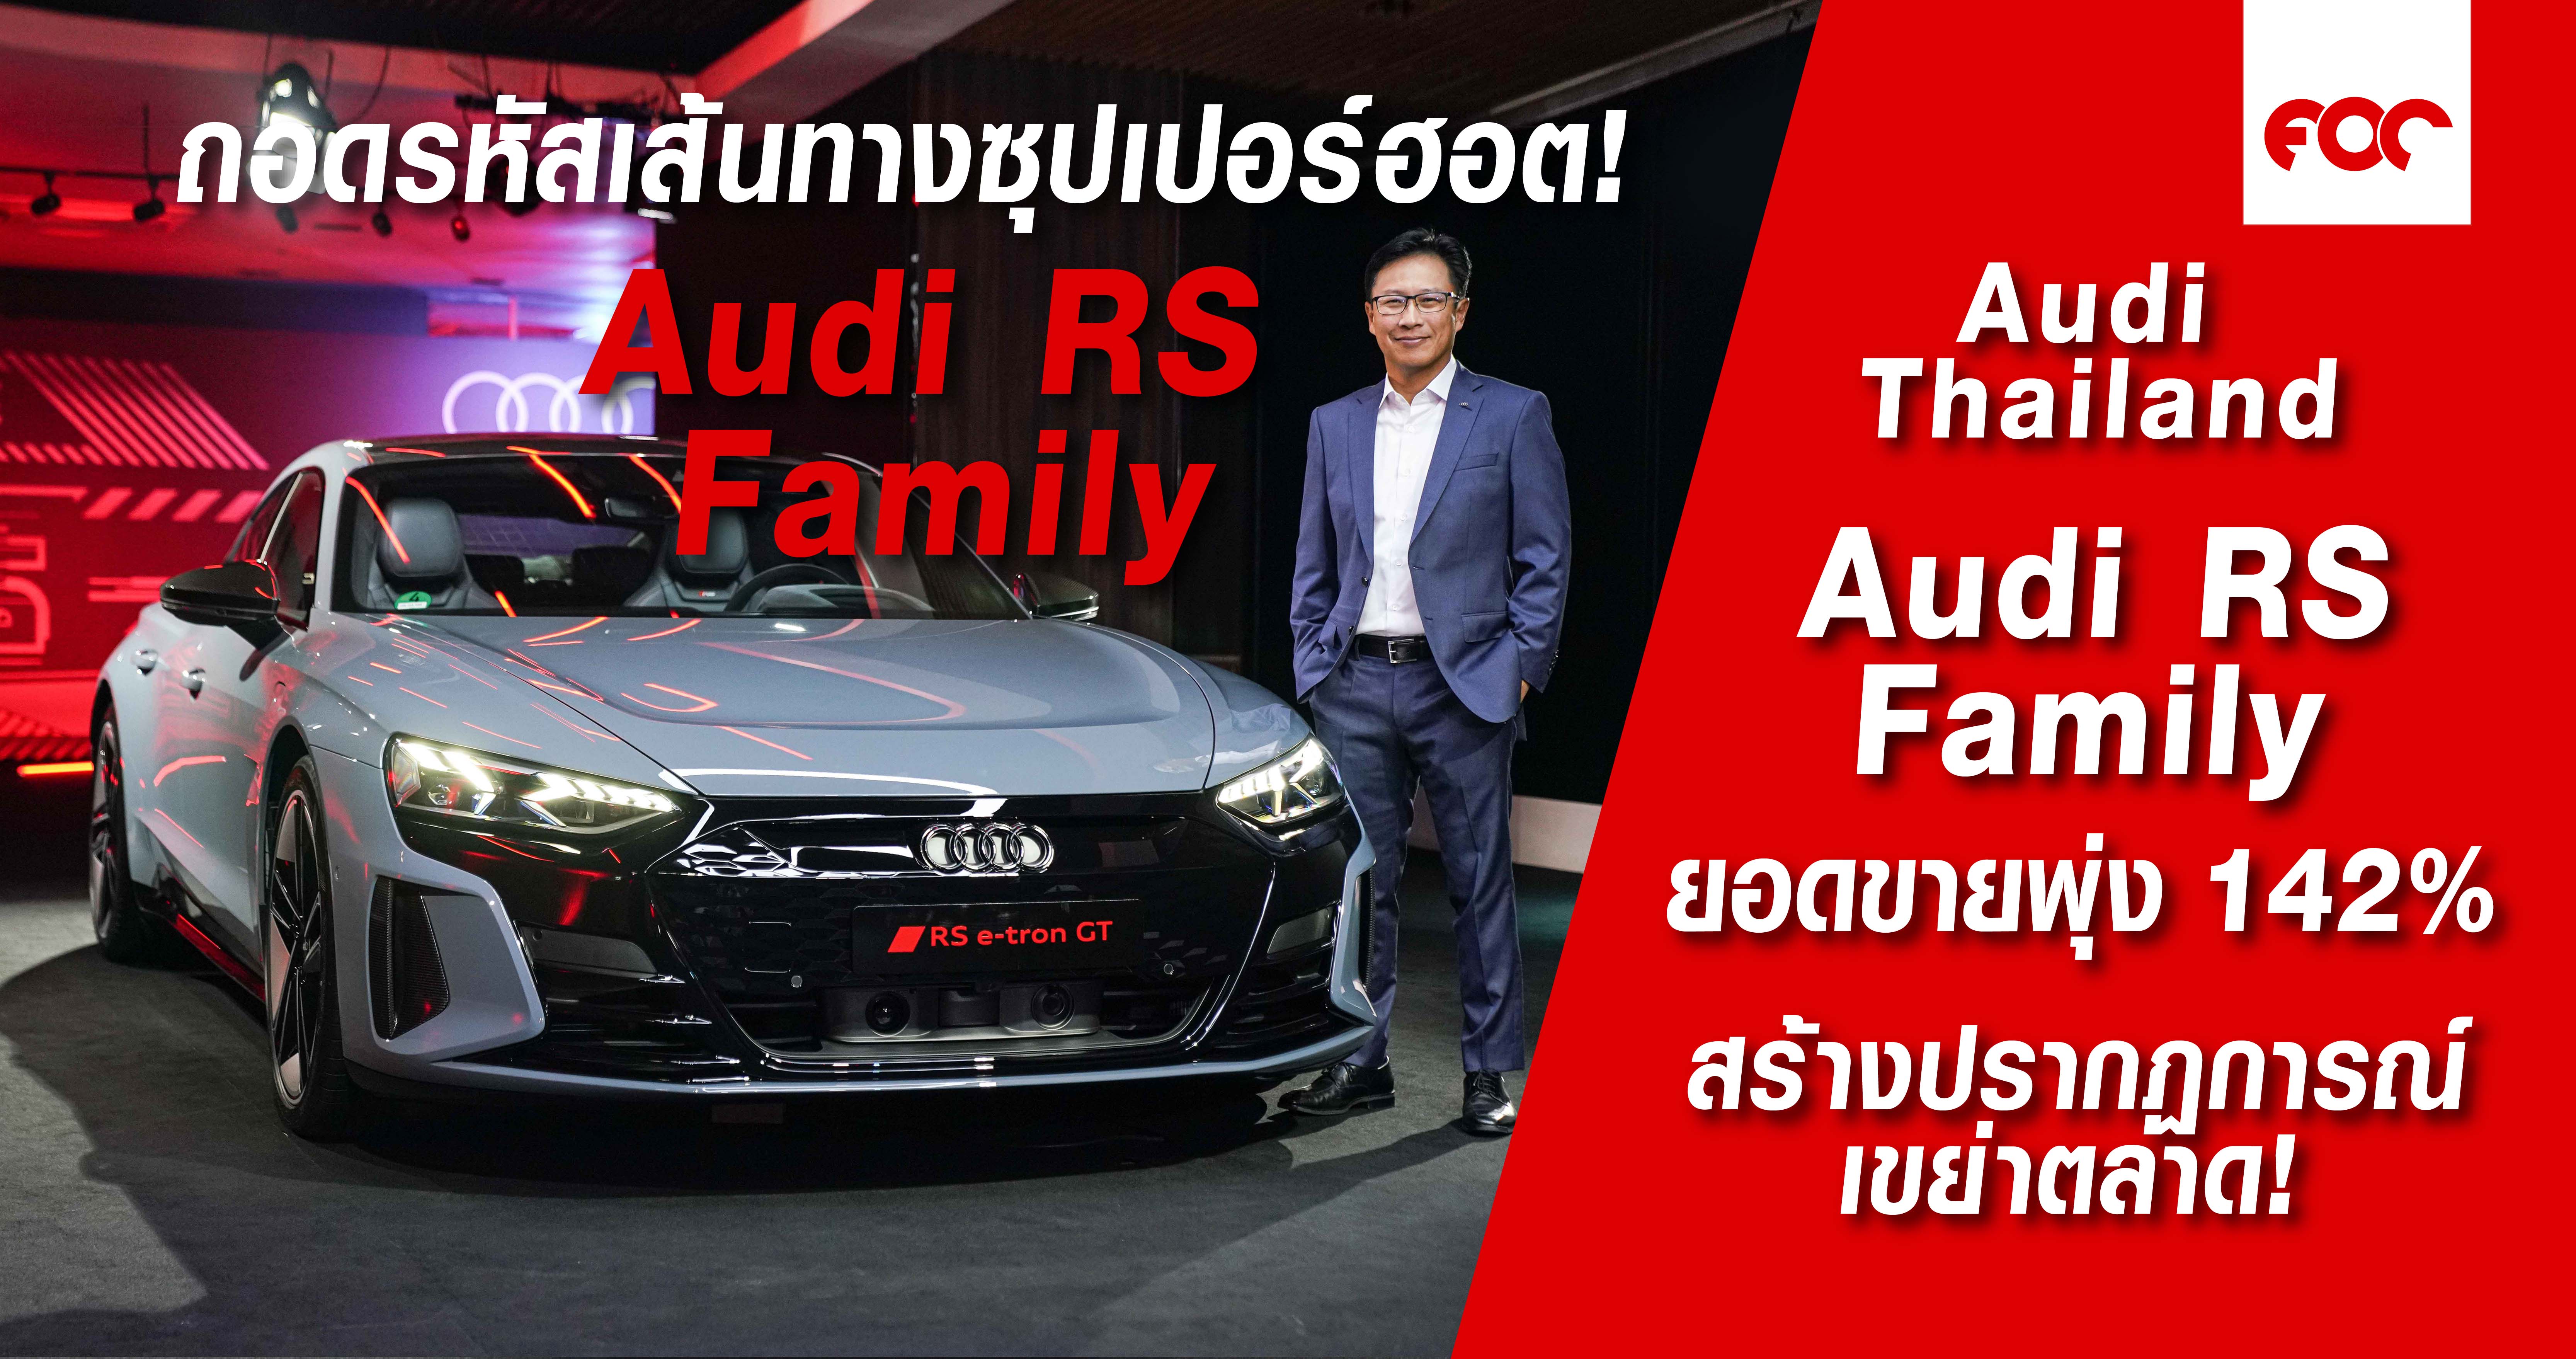 ถอดรหัสเส้นทางซุปเปอร์ฮอต ยนตรกรรม Audi RS Family สร้างปรากฏการณ์เขย่าตลาด พร้อมนิยามใหม่ “Audi RS รถแรงสมรรถนะ Supercar” กฤษฎา ล่ำซำ ปลื้ม กลยุทธ์ขยายพอร์ต Volume model ดันยอดขาย RS พุ่ง 142 %